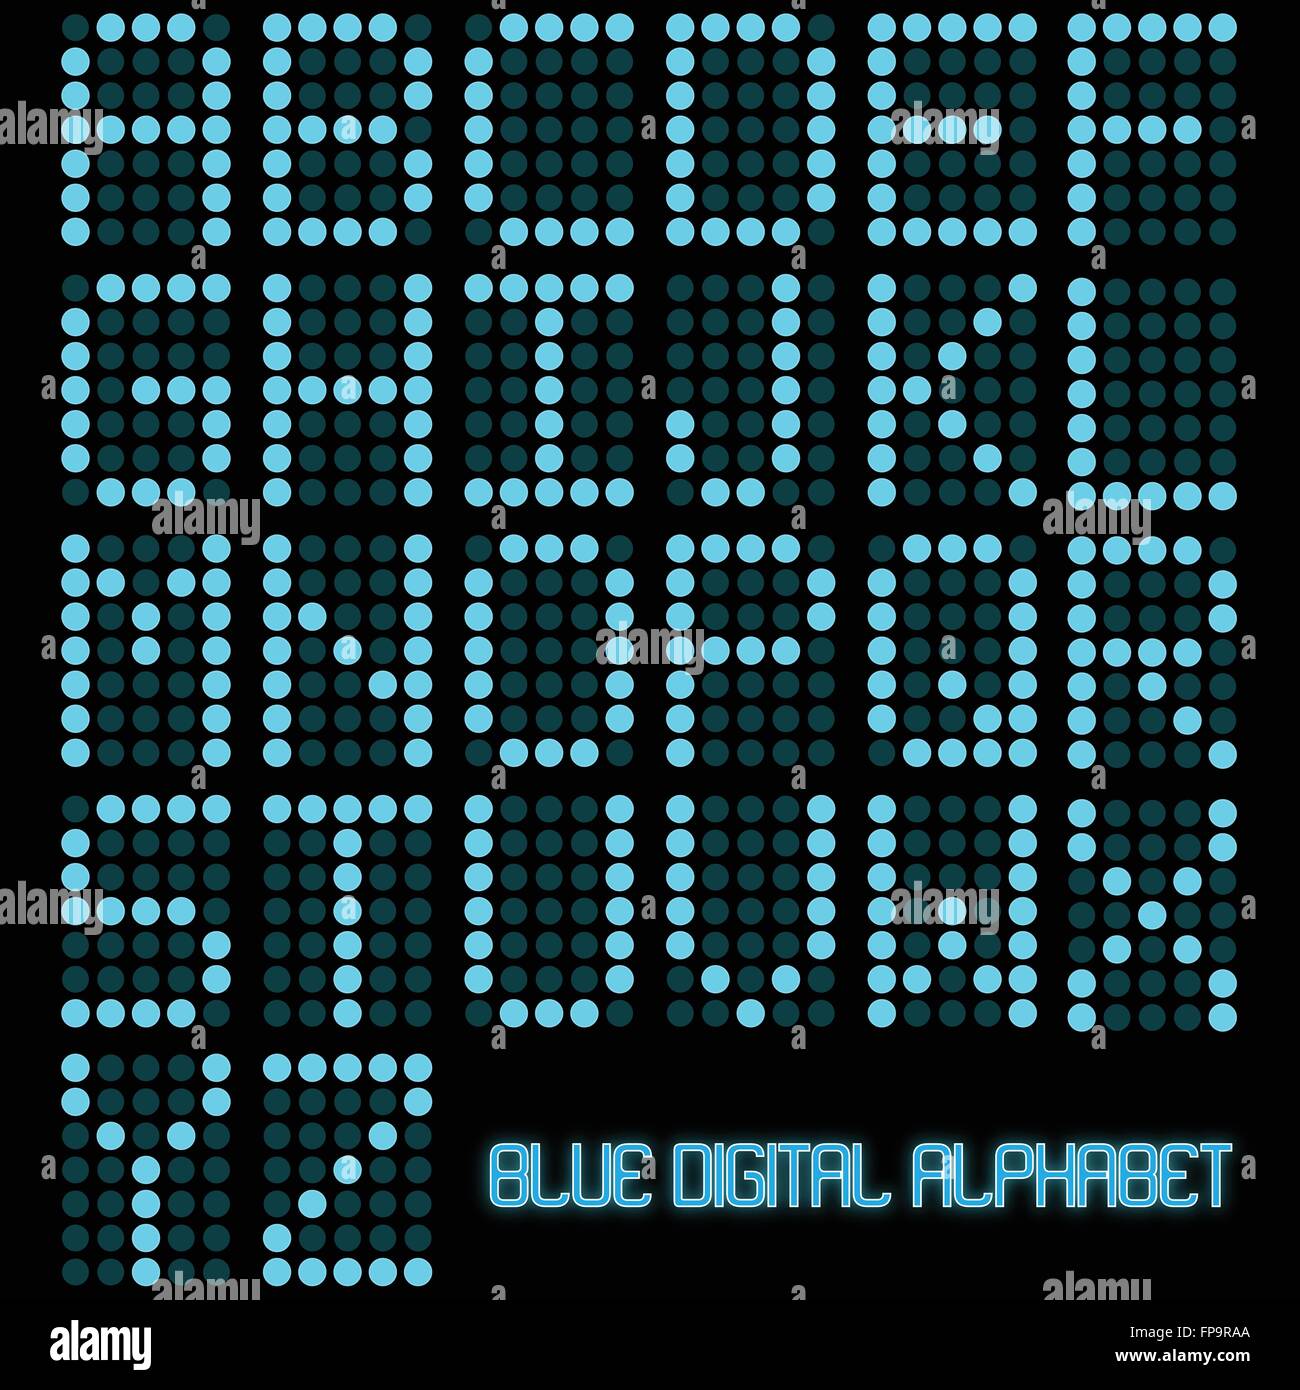 Bild eines digitalen blau Alphabets auf einem dunklen Hintergrund. Stock Vektor